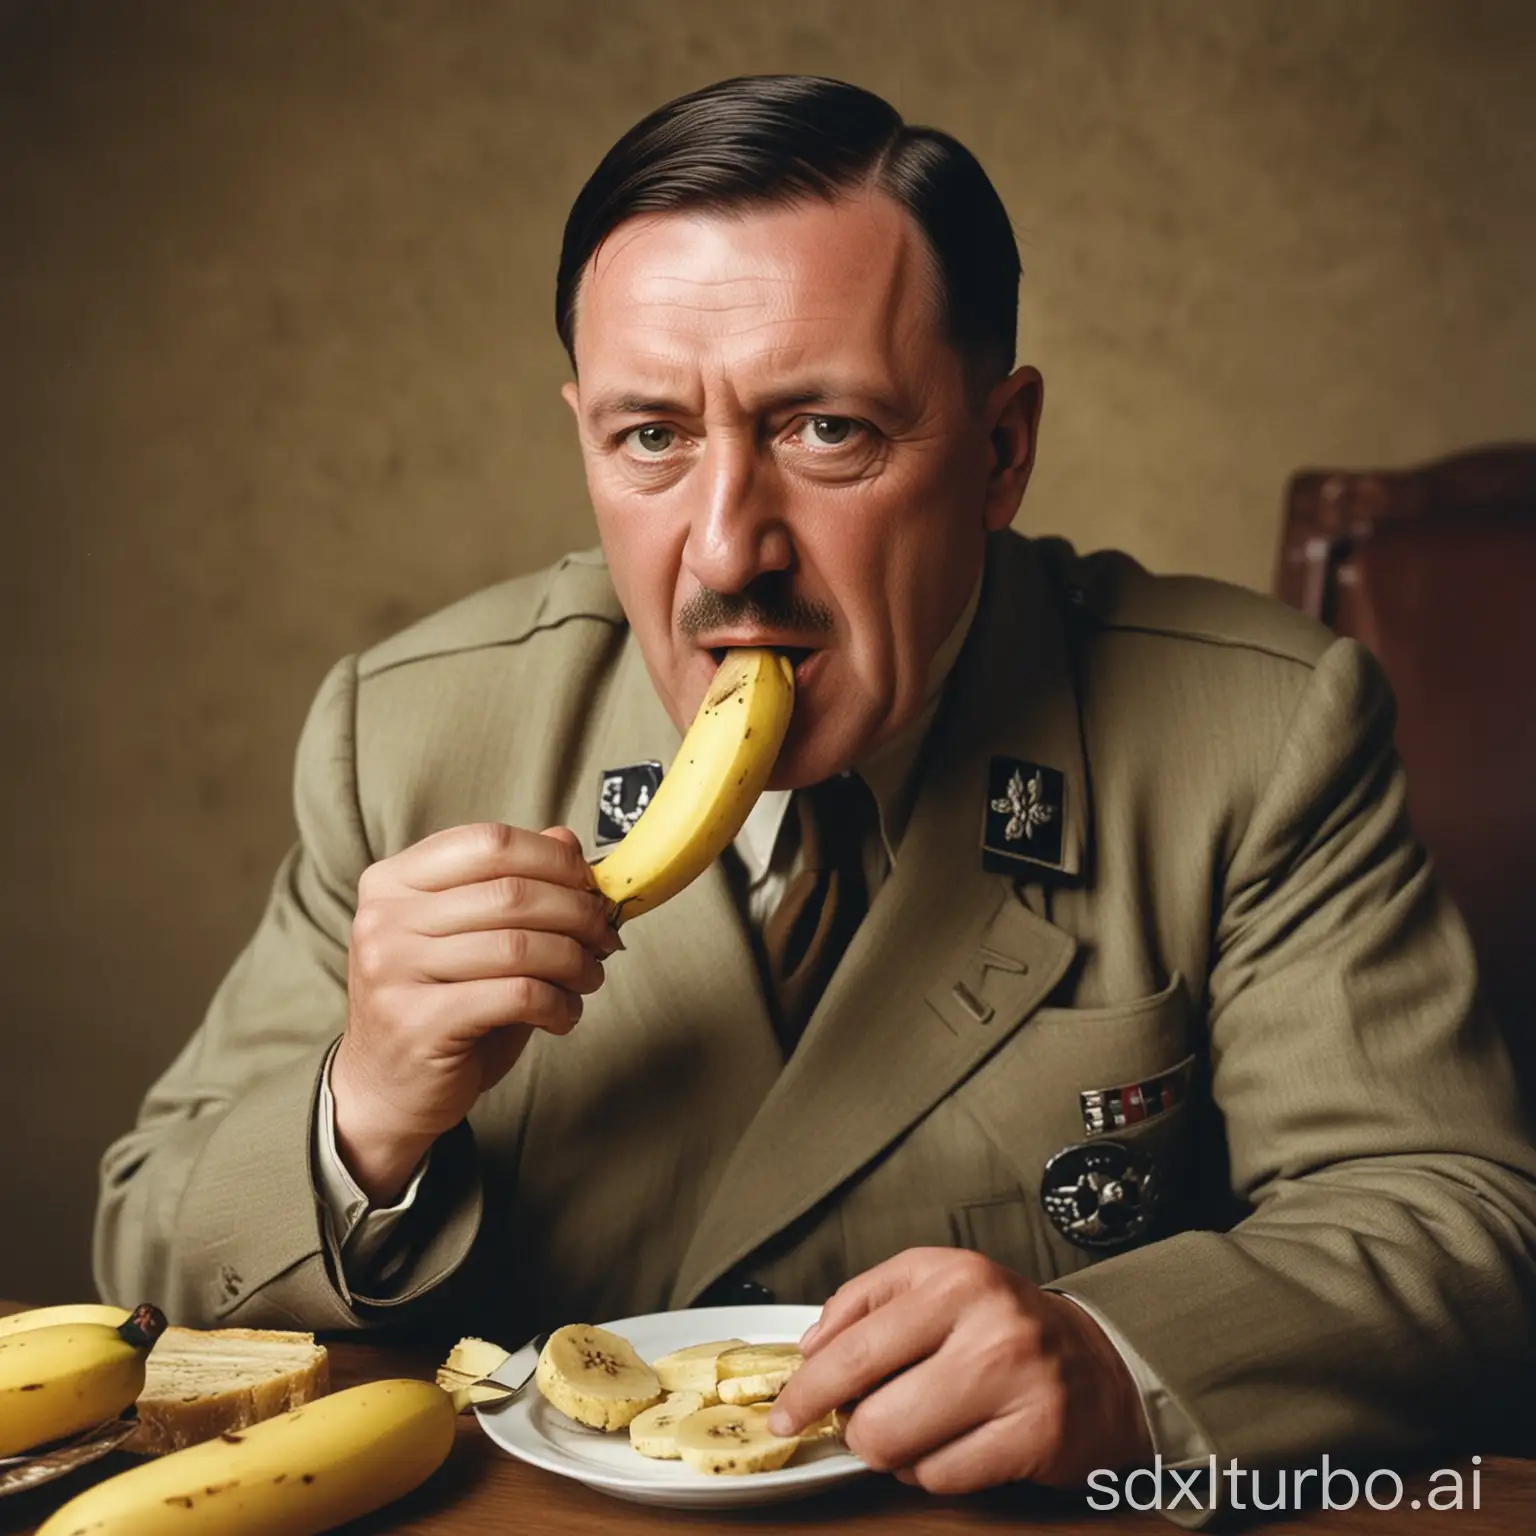 Adolf-Hitler-Enjoying-a-Banana-in-Color-Photograph